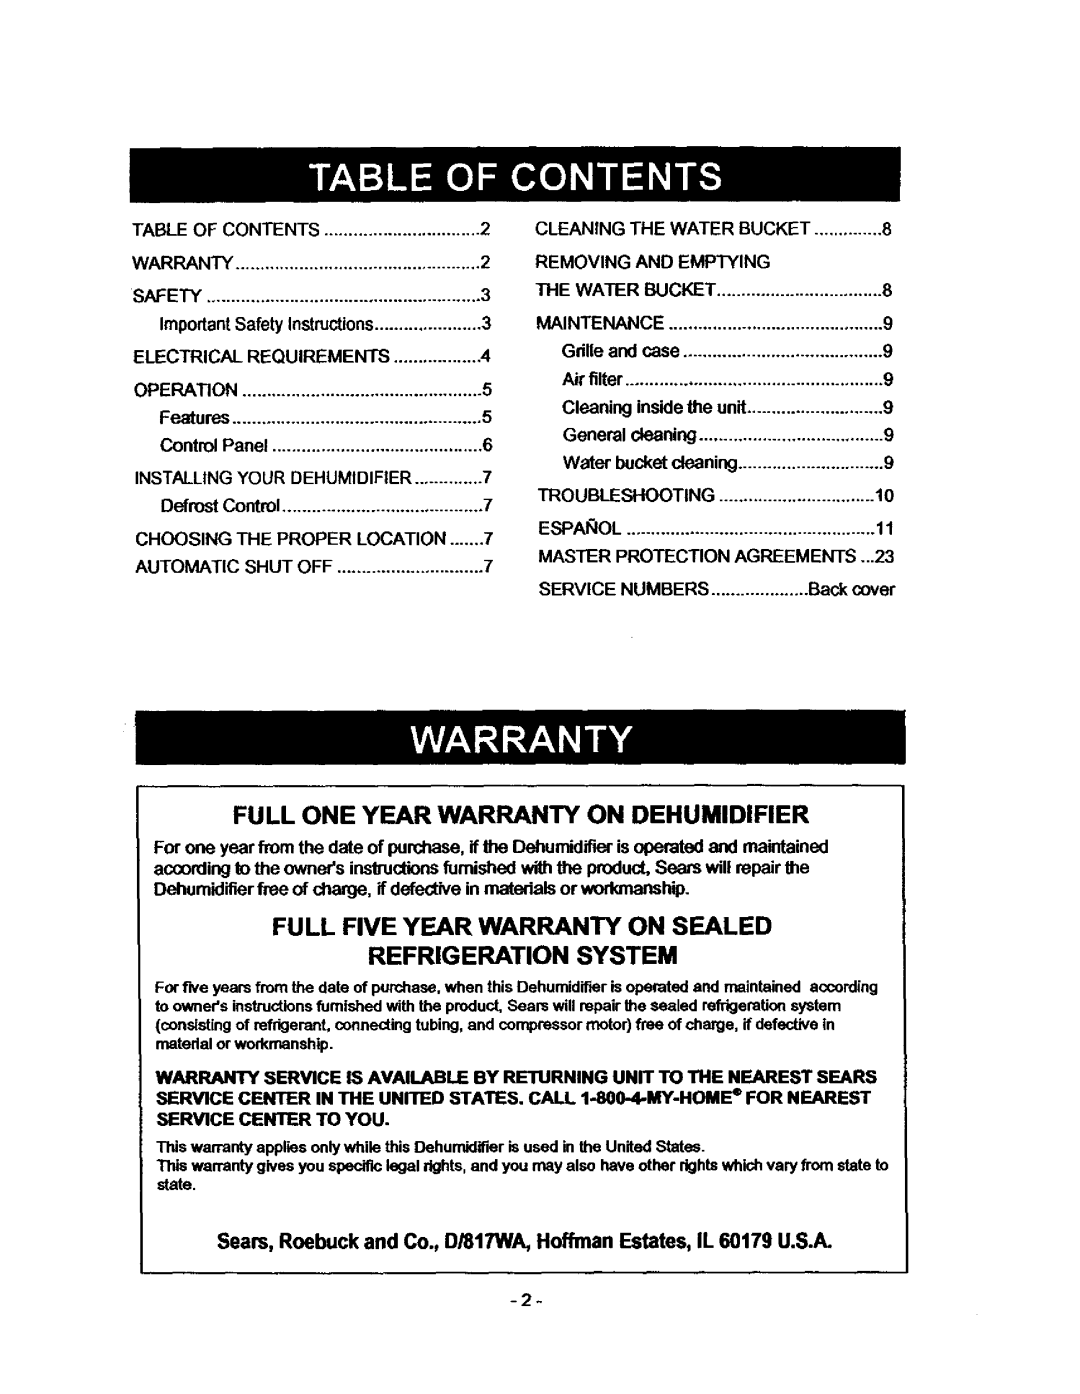 Kenmore 580.53701 Full One Year Warranty On Dehumidifier, Full Five Year Warranty On Sealed, Refrigeration System 